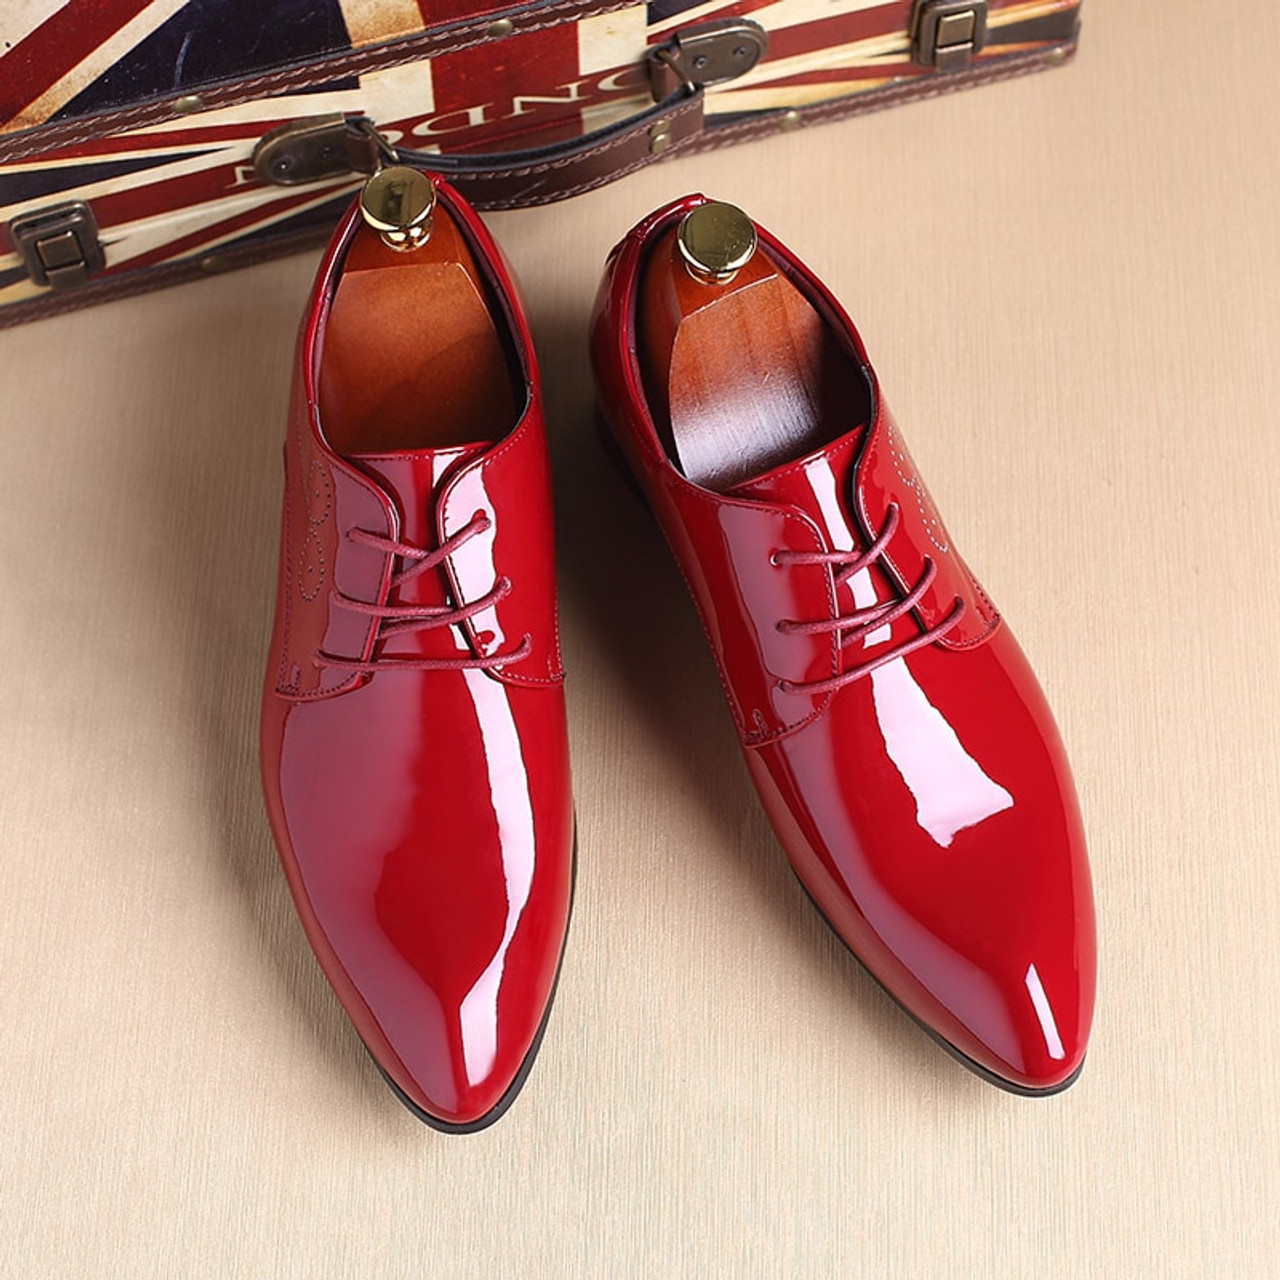 Острые мужские туфли. Красные туфли мужские. Красные лаковые туфли мужские. Лакированные туфли мужские. Туфли мужские кожаные красные.